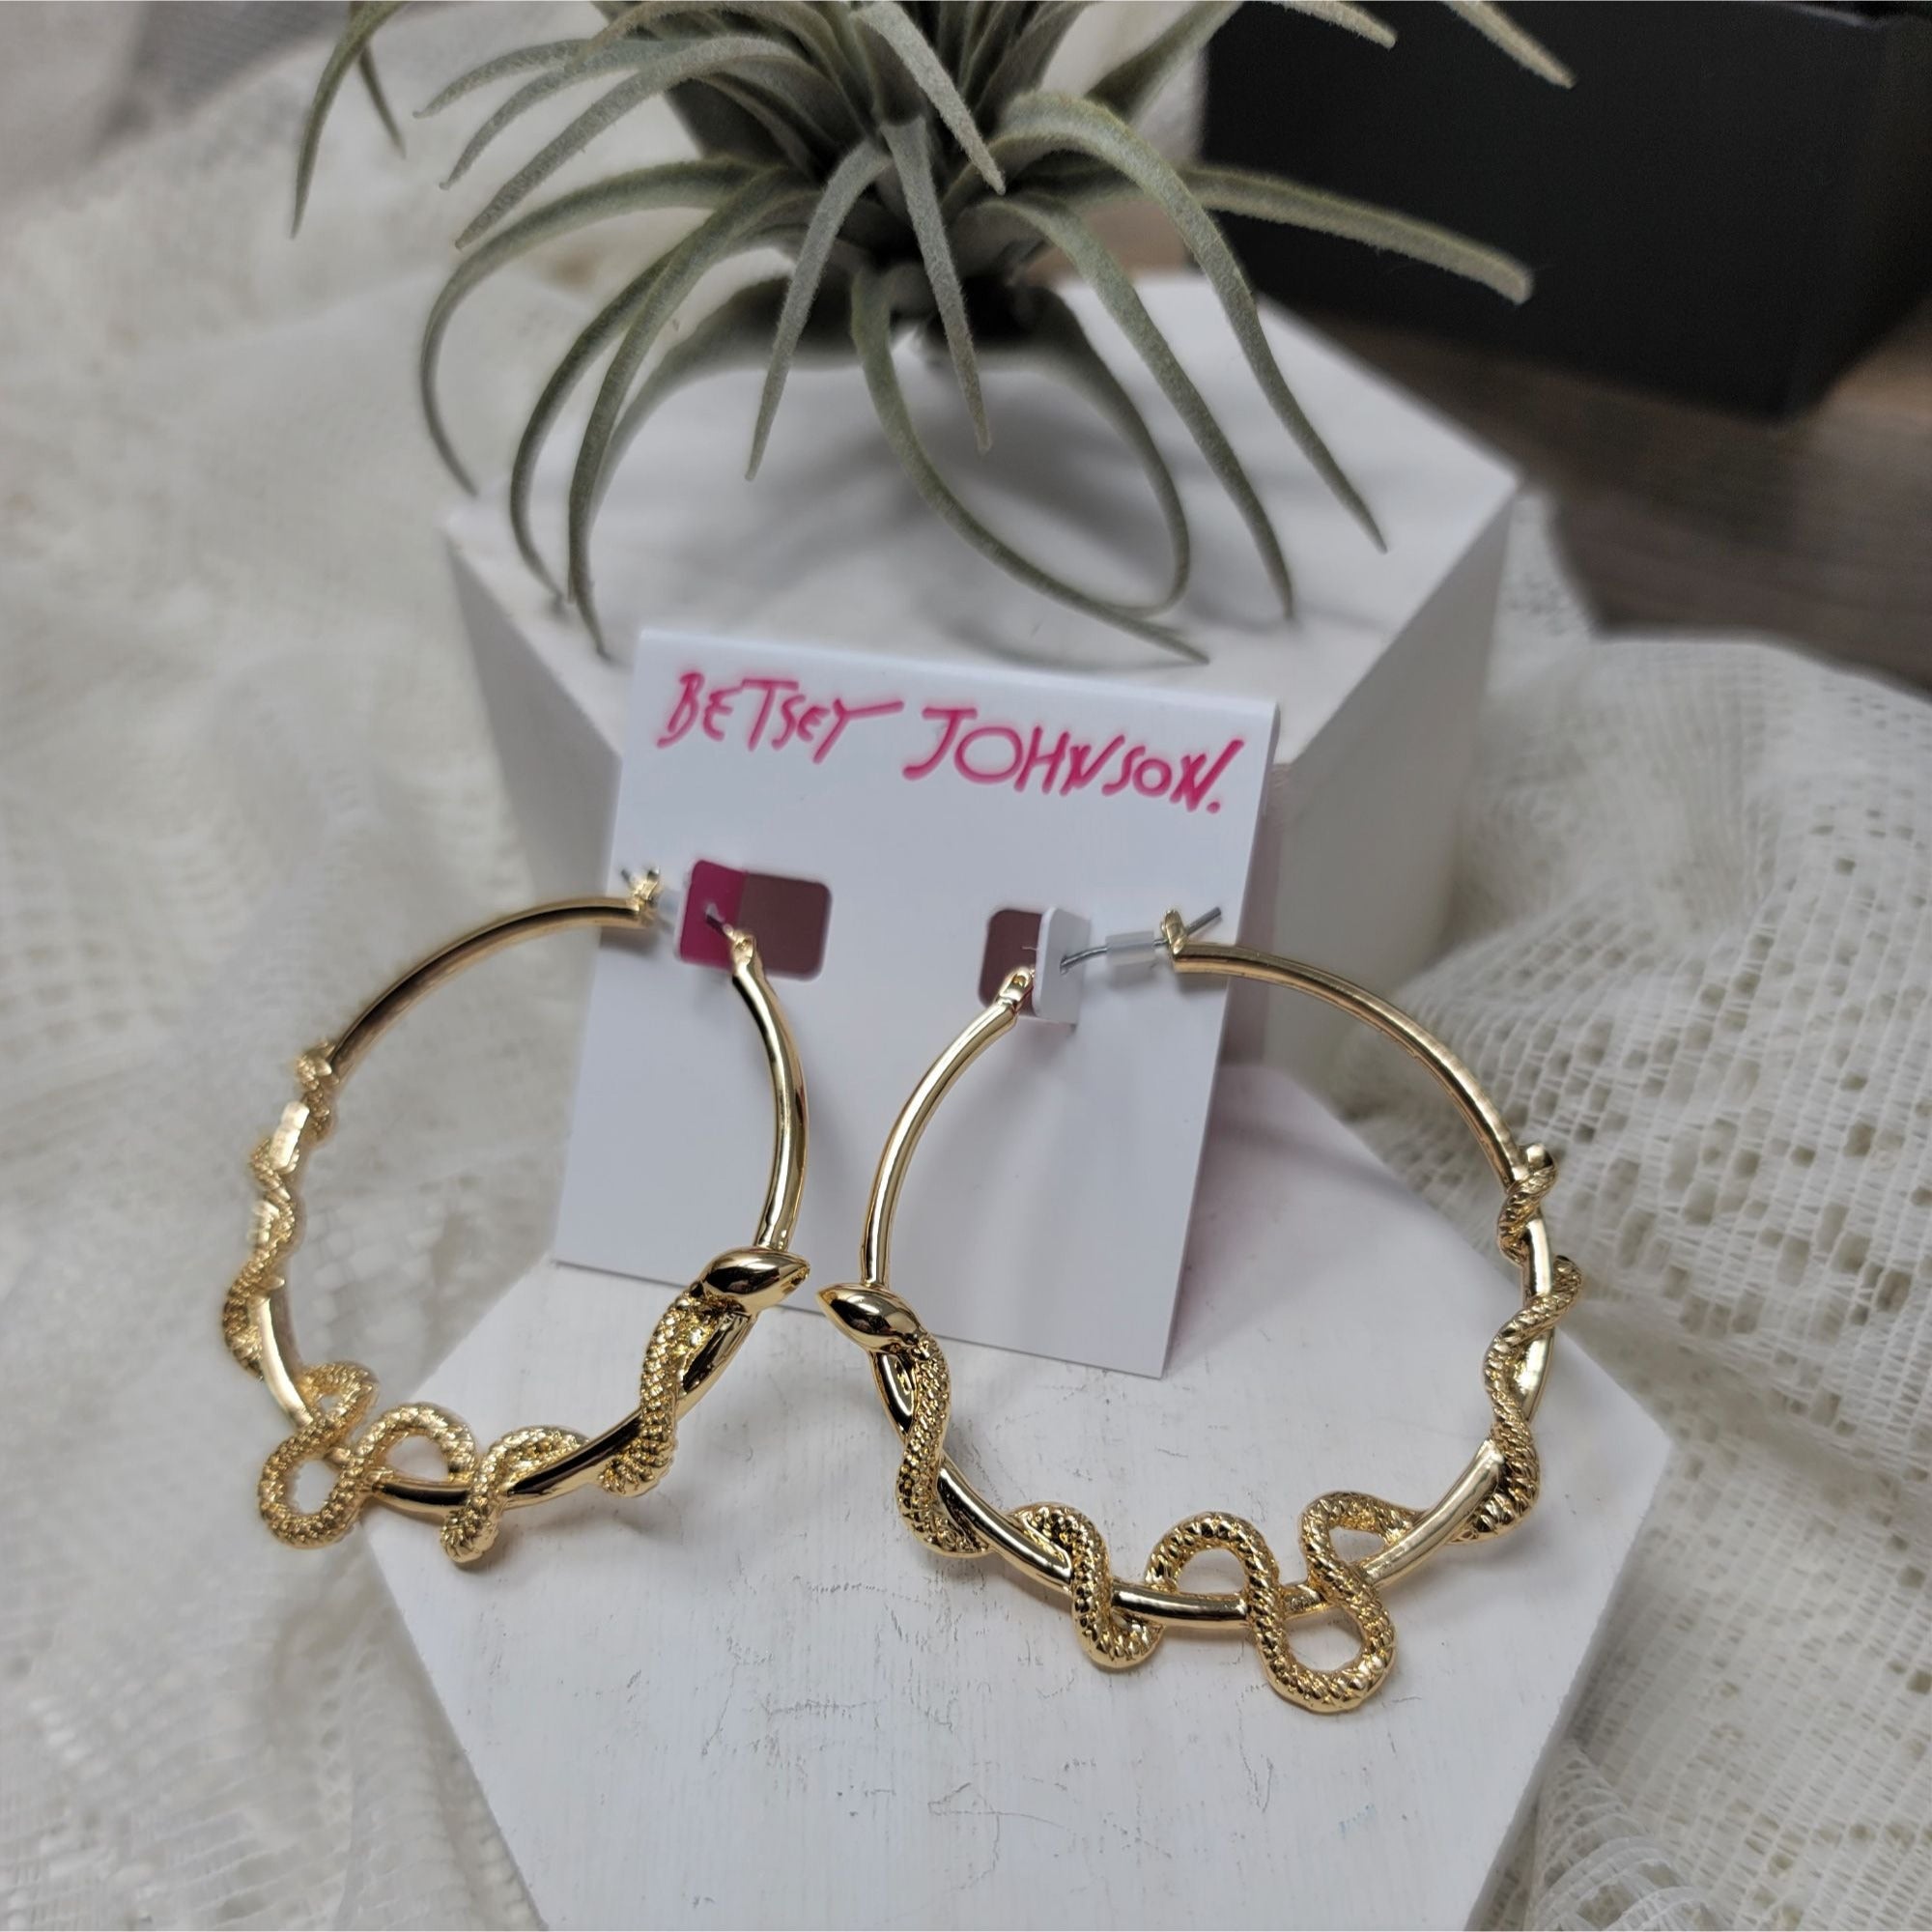 Betsey Johnson Seductive Snake Hoop Earrings Gold-tone Pierced NWT